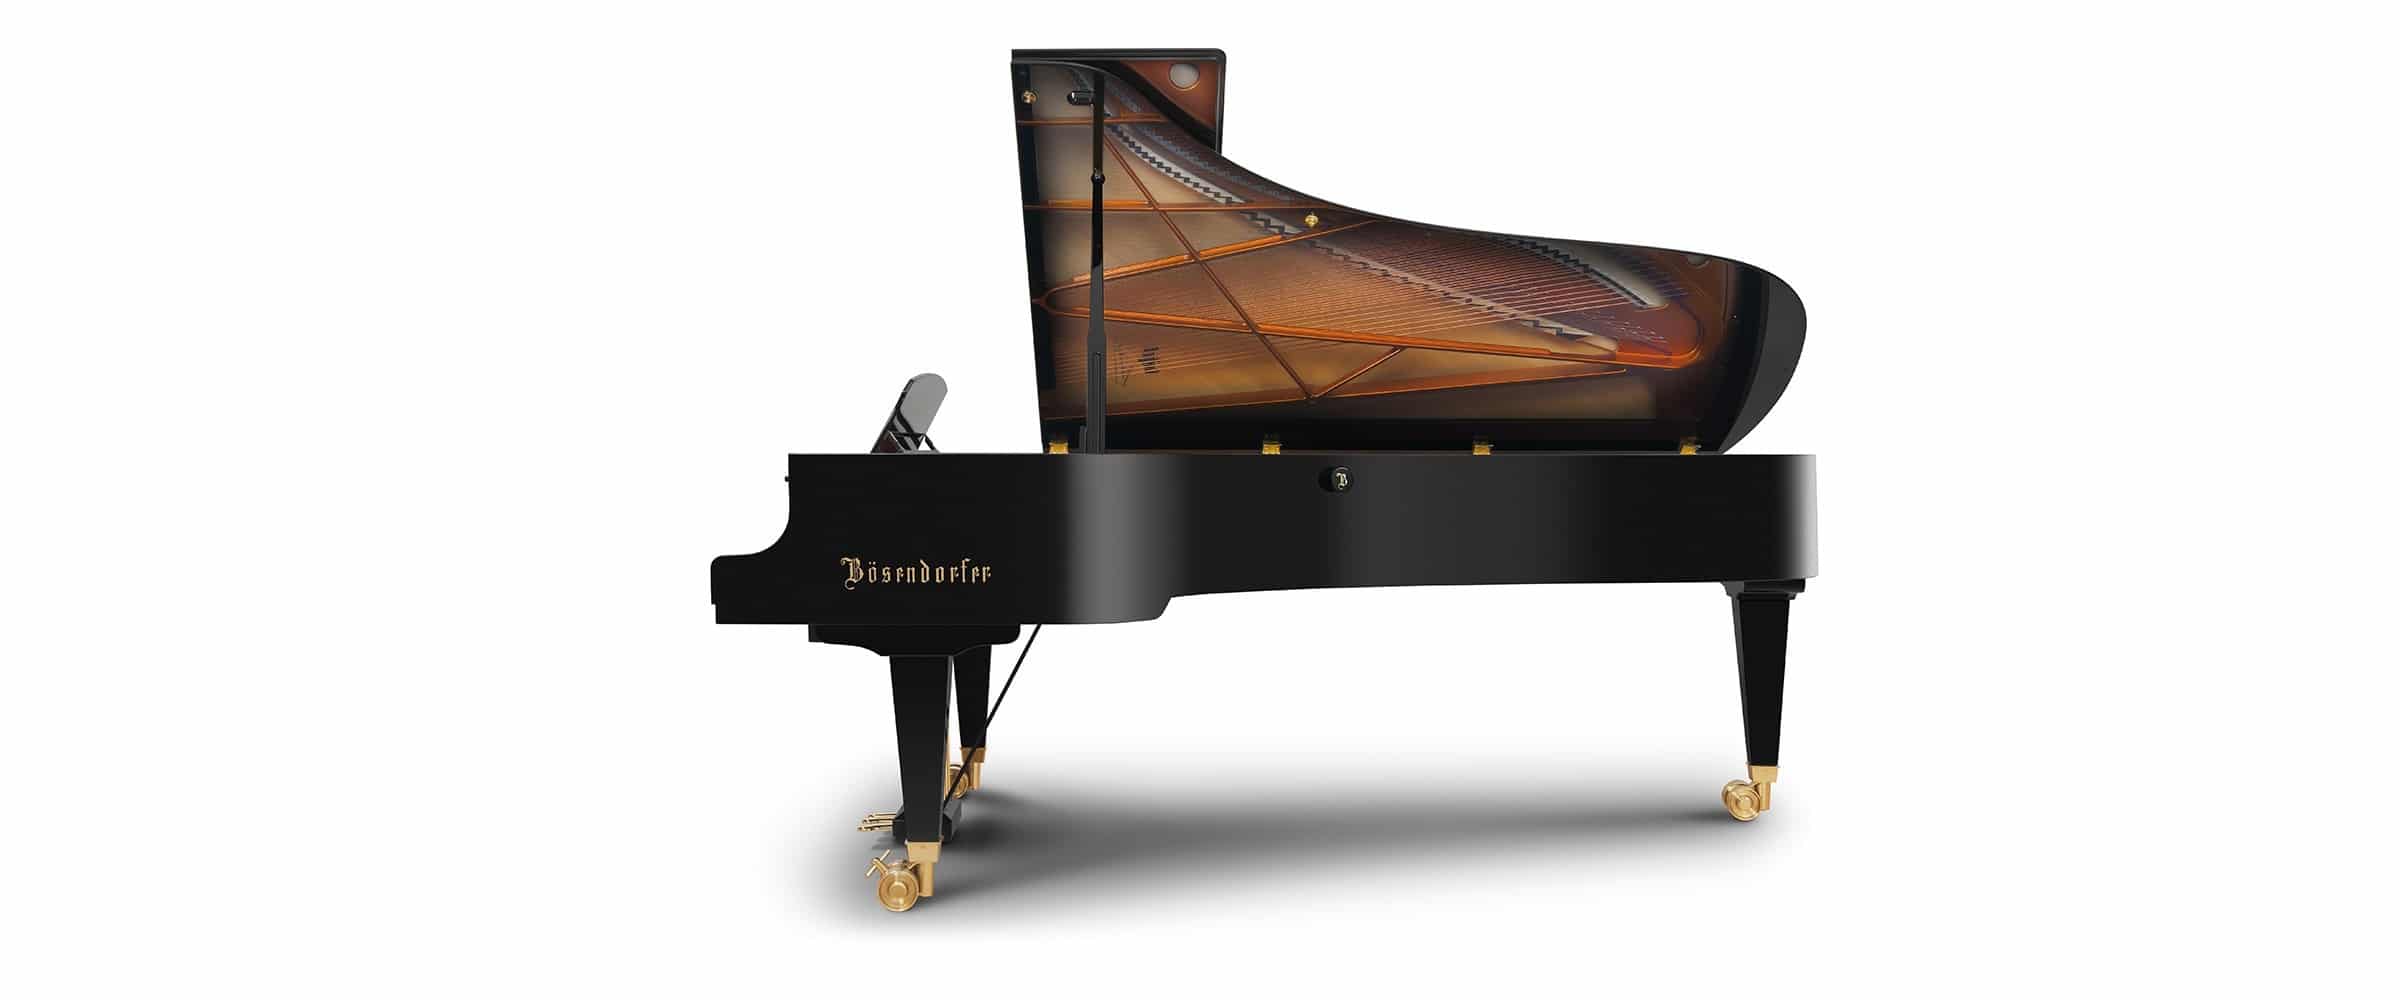 Bosendorfer Piano